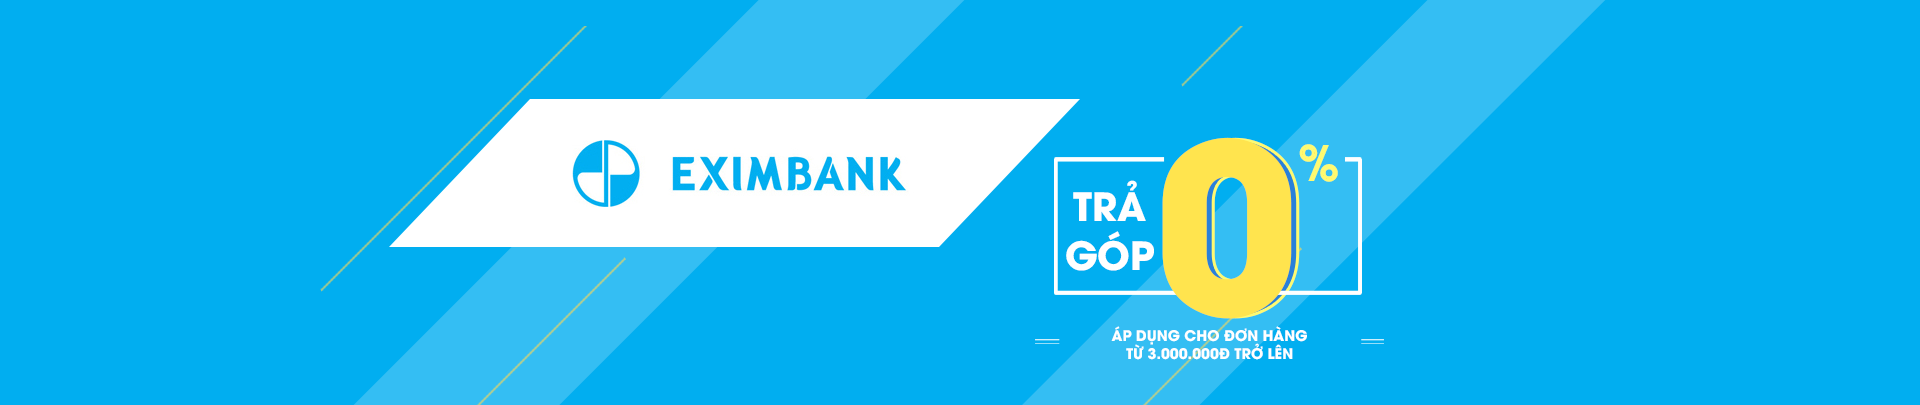 eximbank-desktop.png